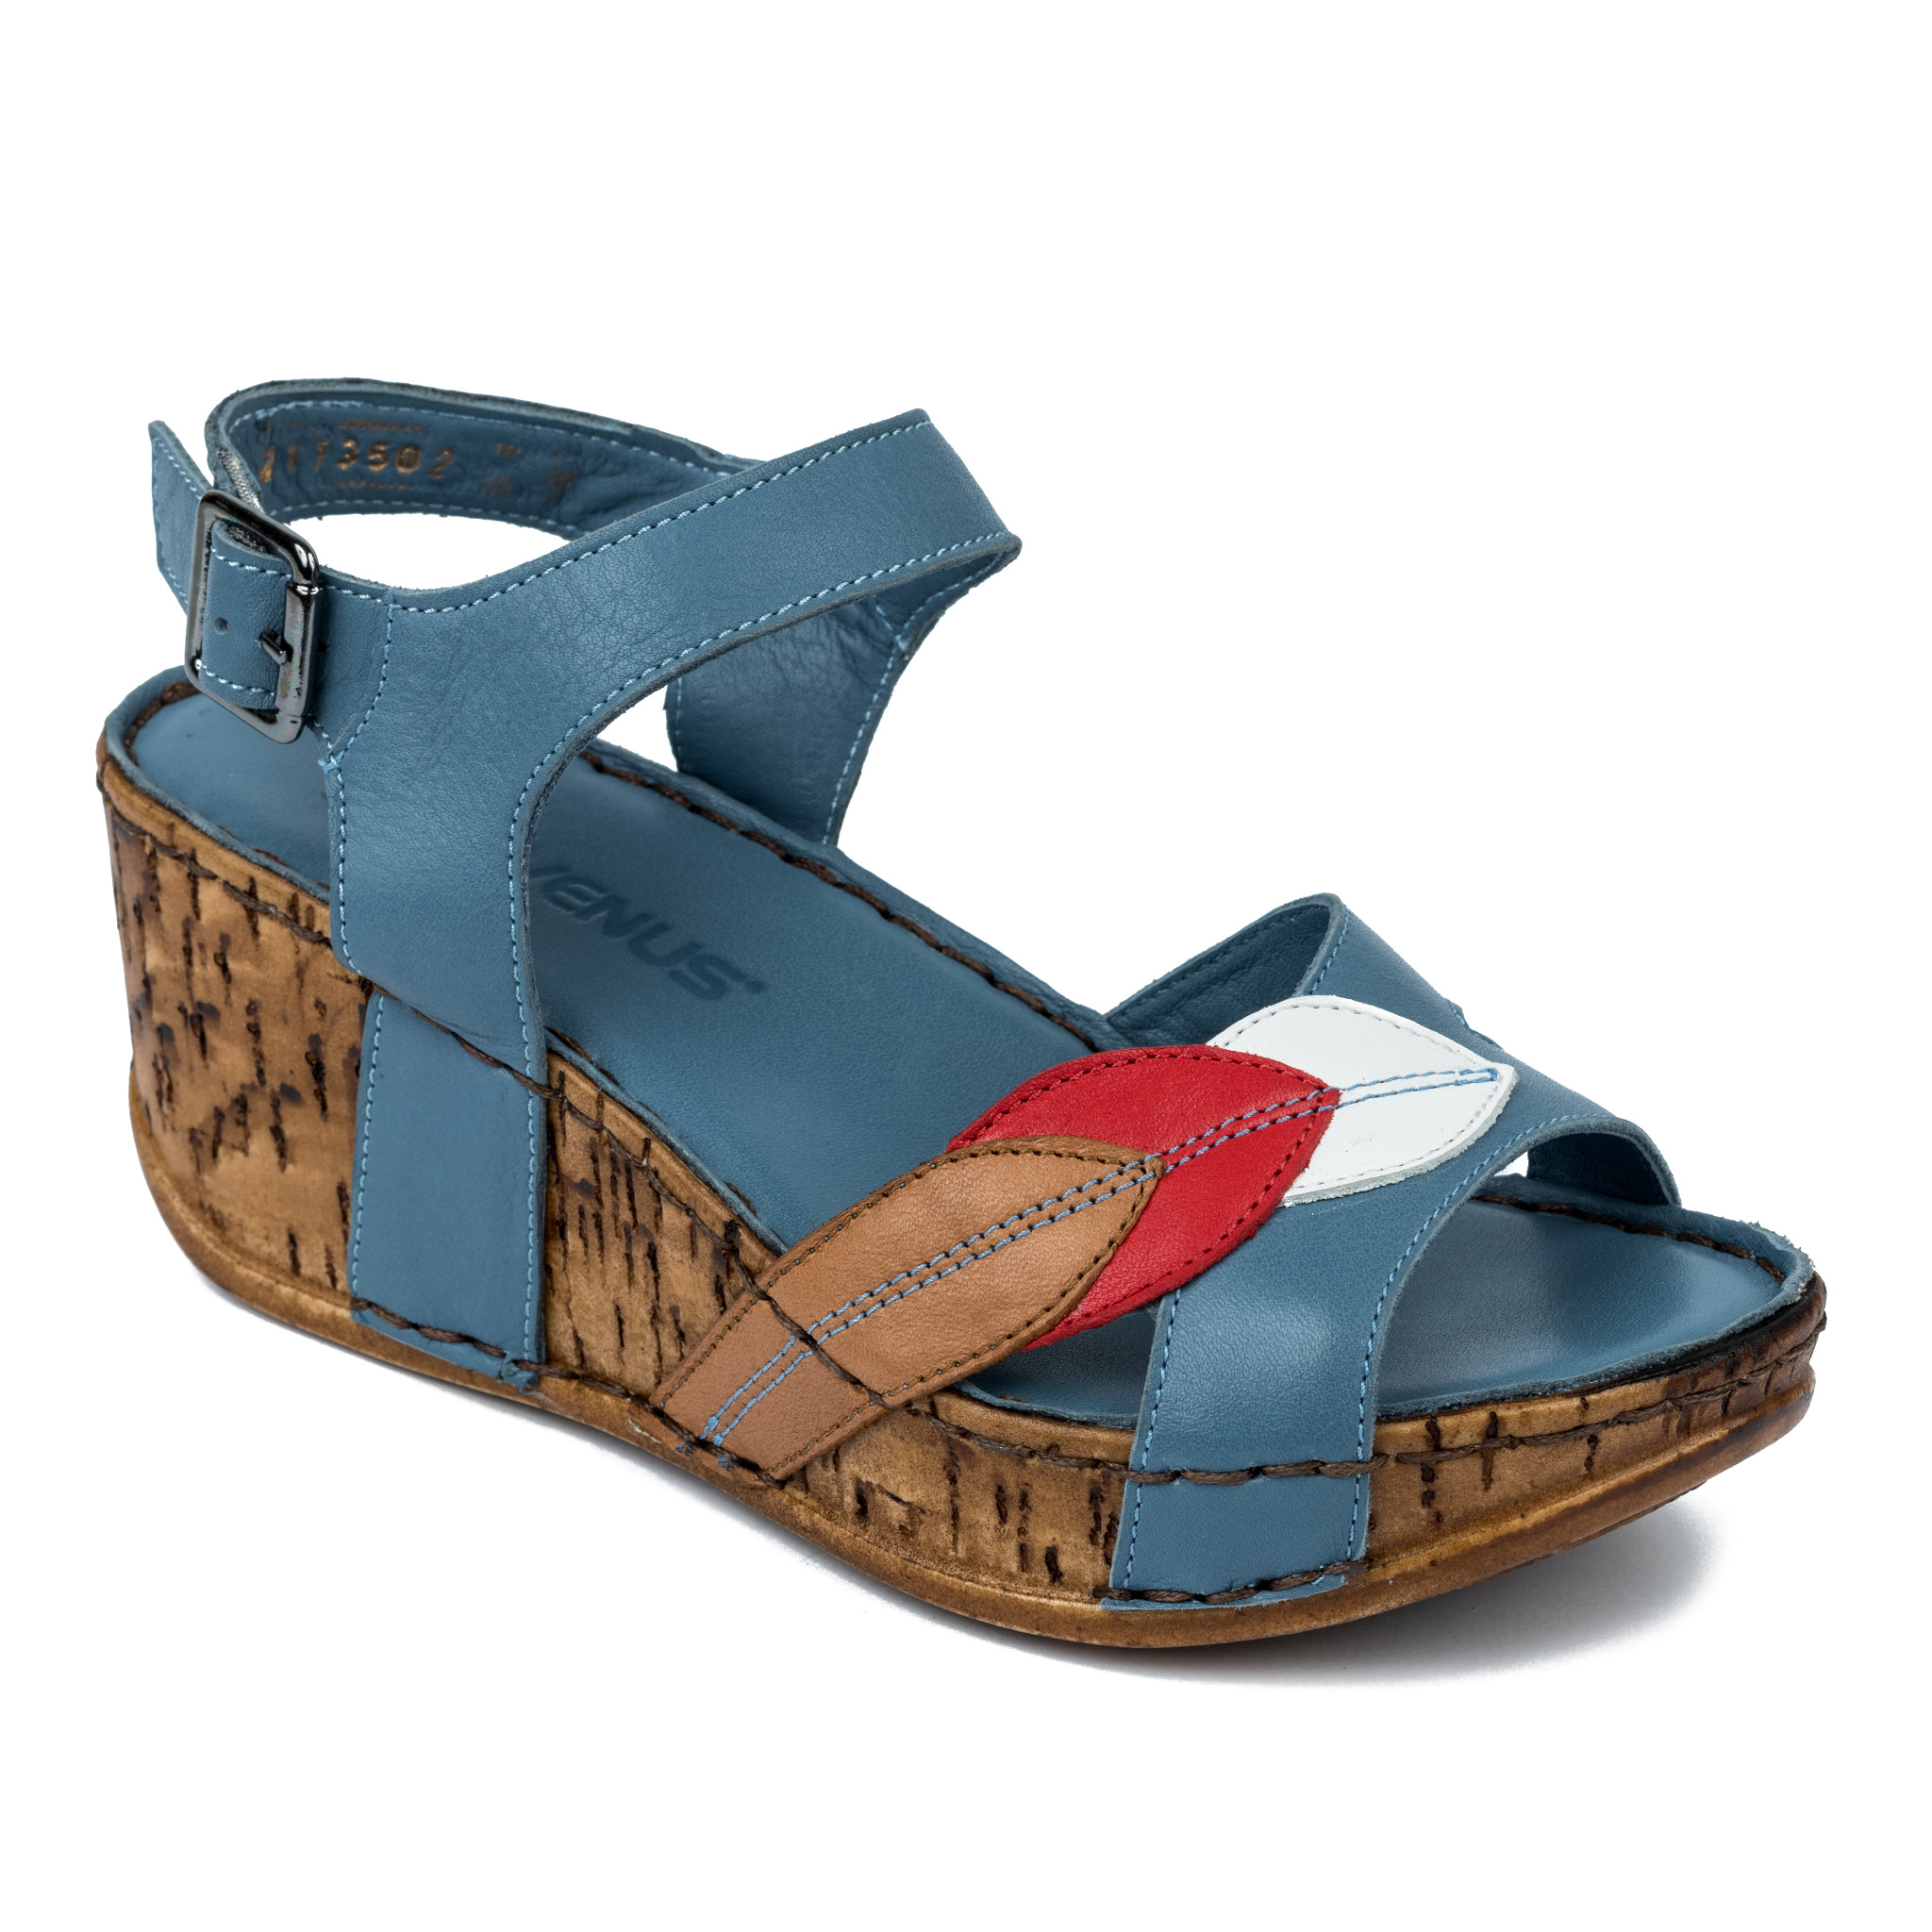 Women sandals A232 - BLUE